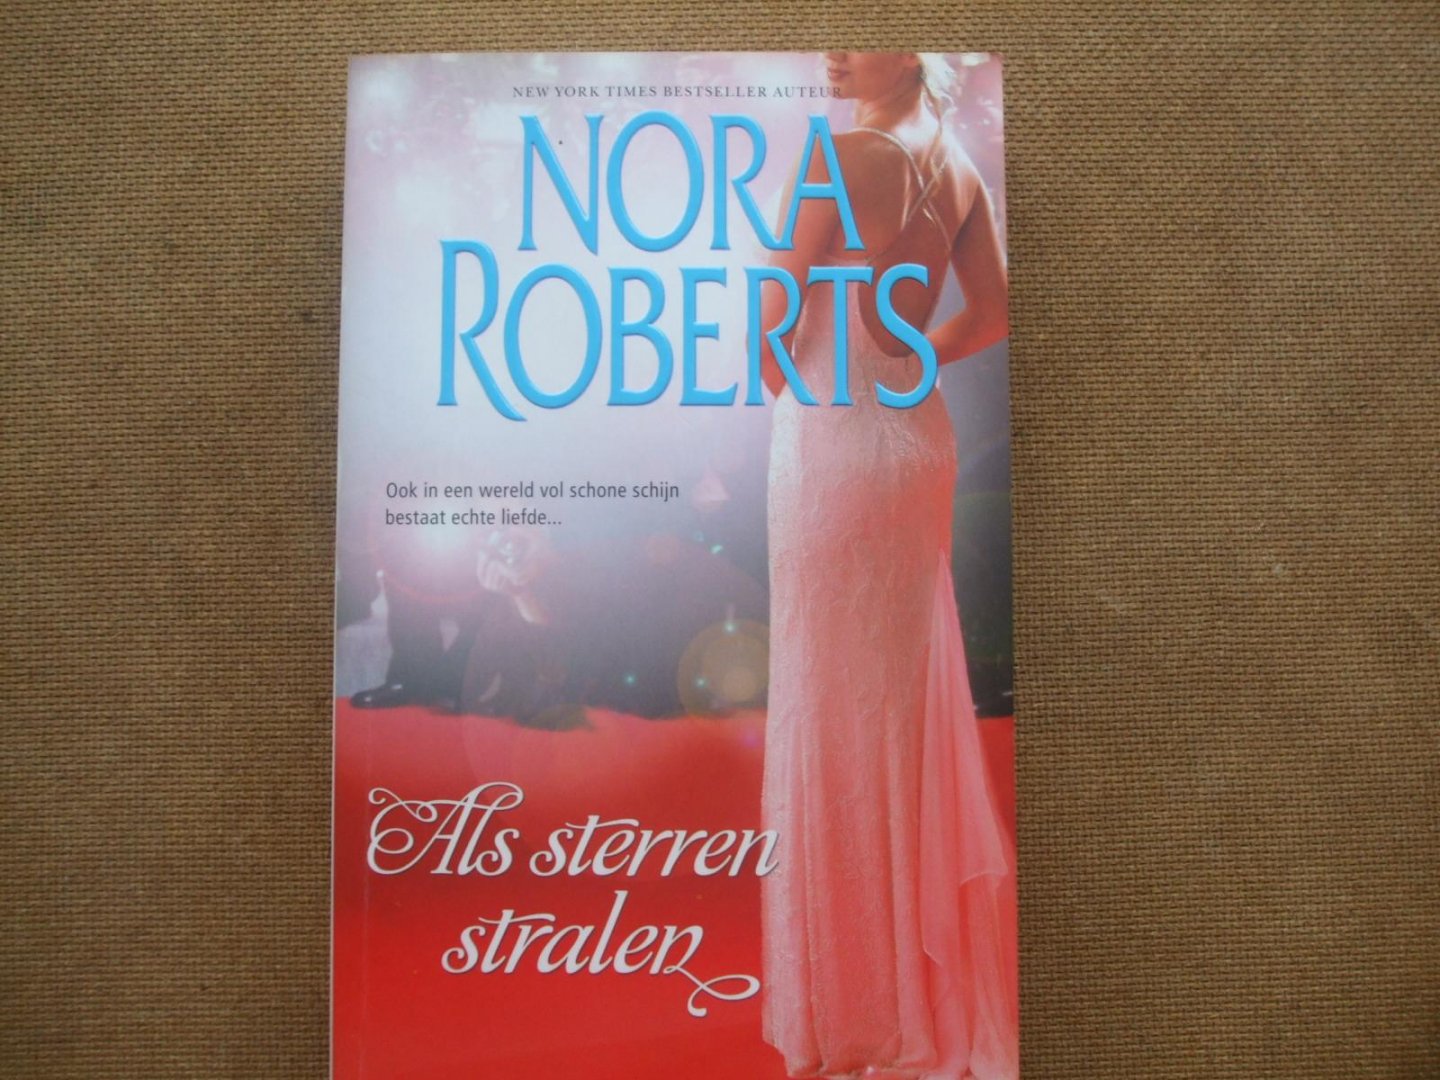 Nora Roberts - Als sterren stralen